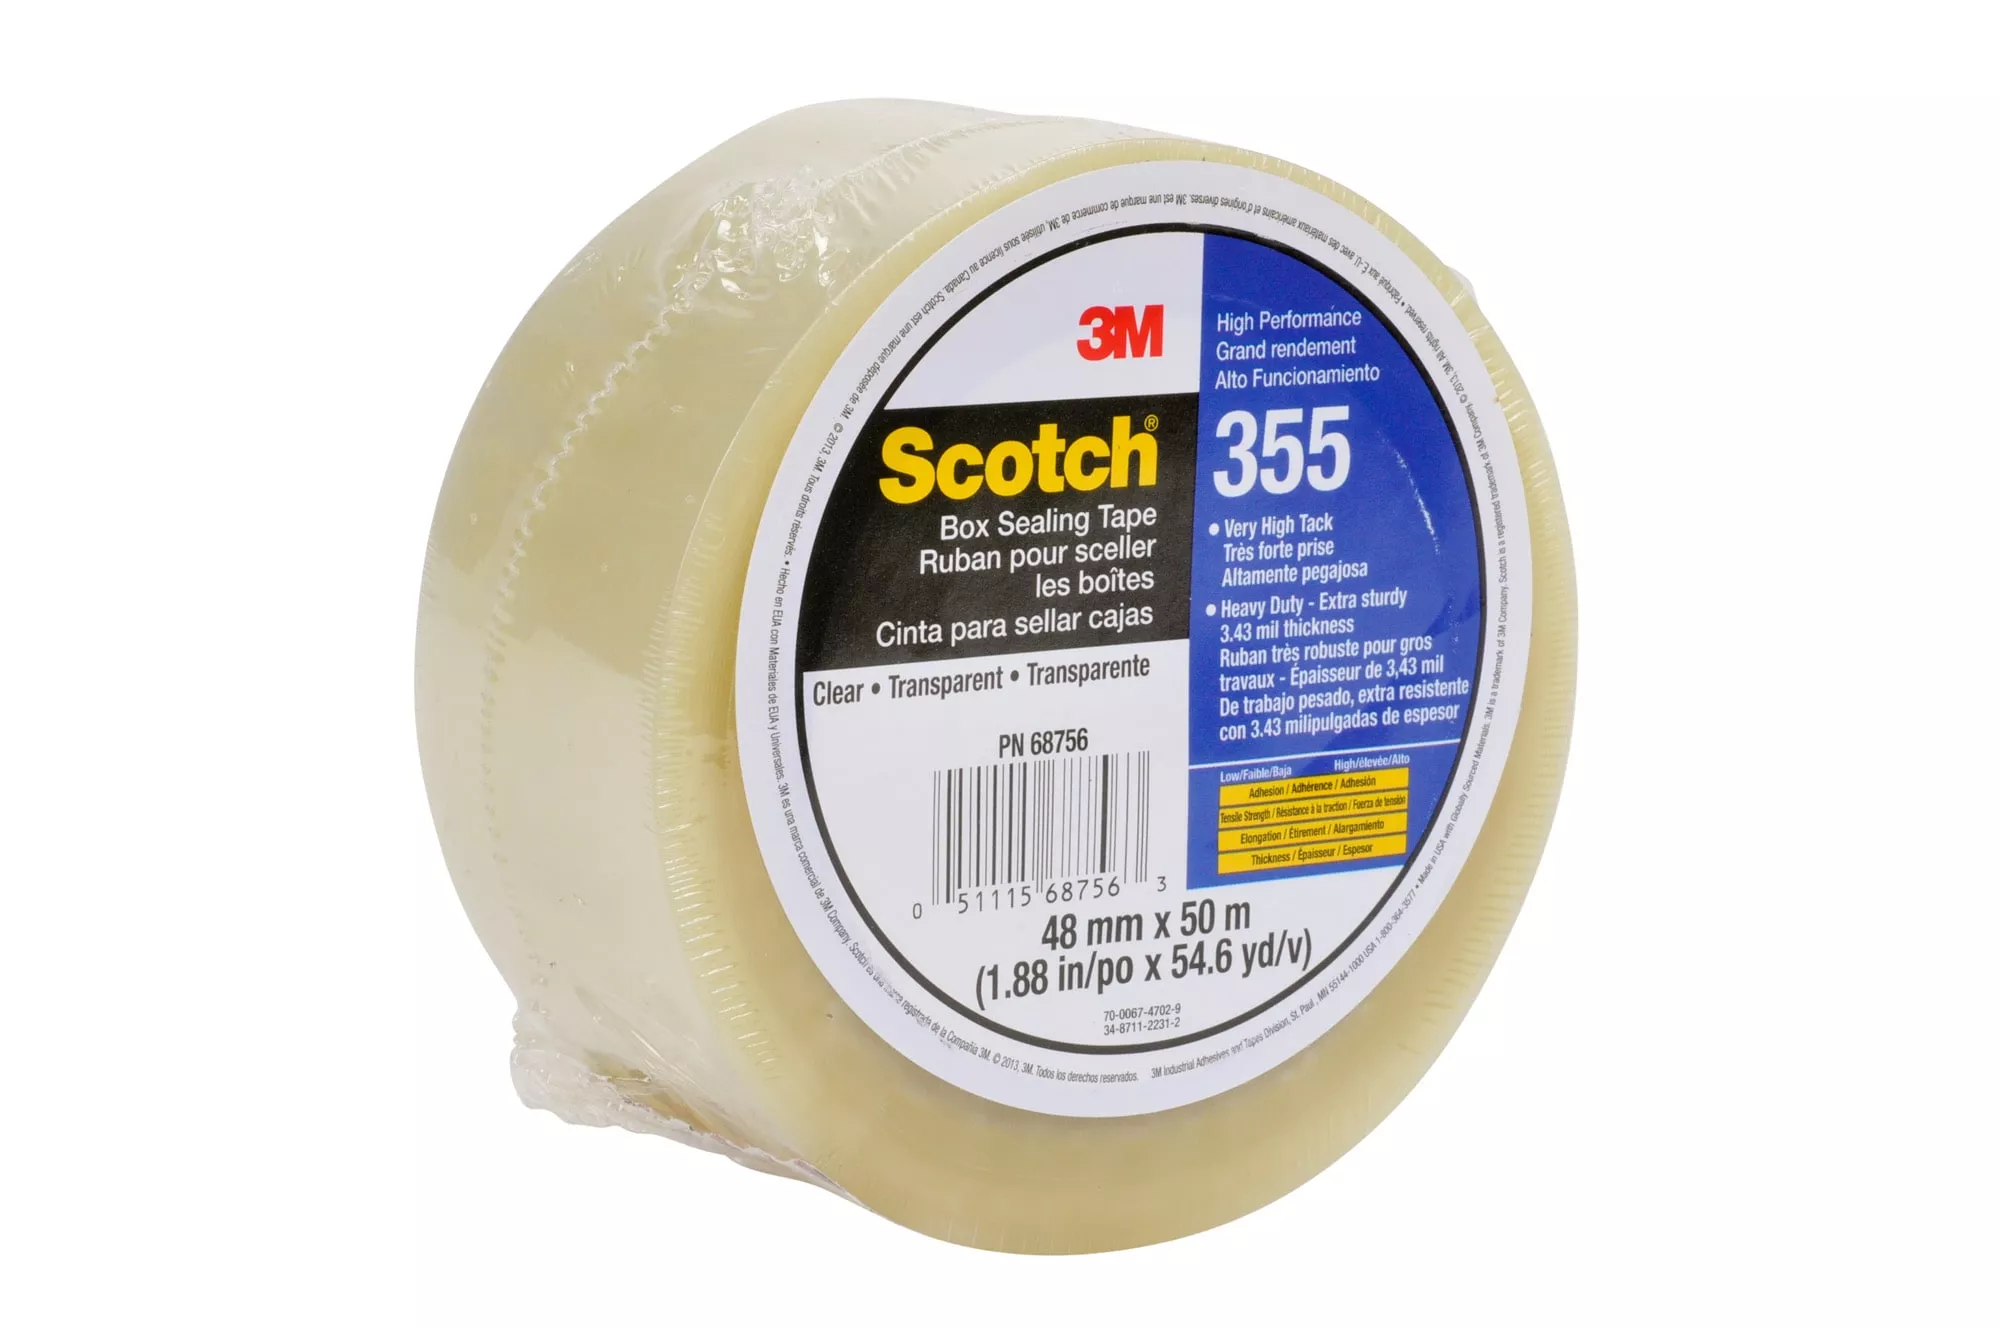 SKU 7010302430 | Scotch® Box Sealing Tape 355